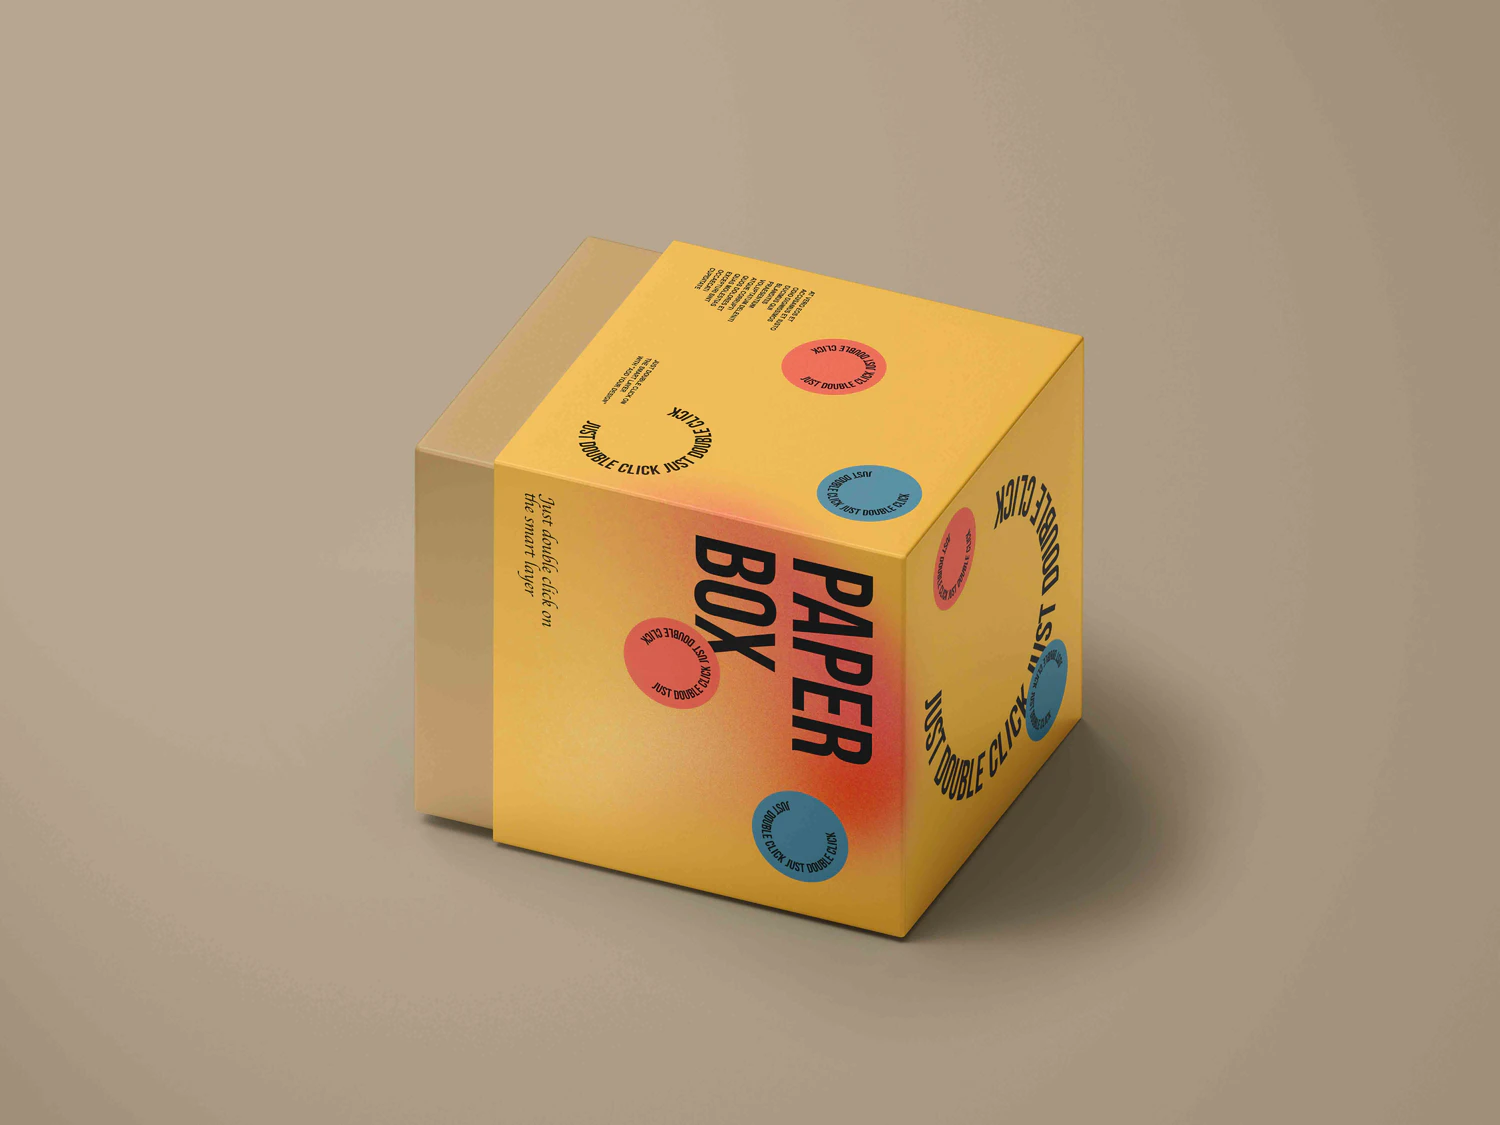 3341 正方形天地盖纸盒包装盒设计PSD样机素材